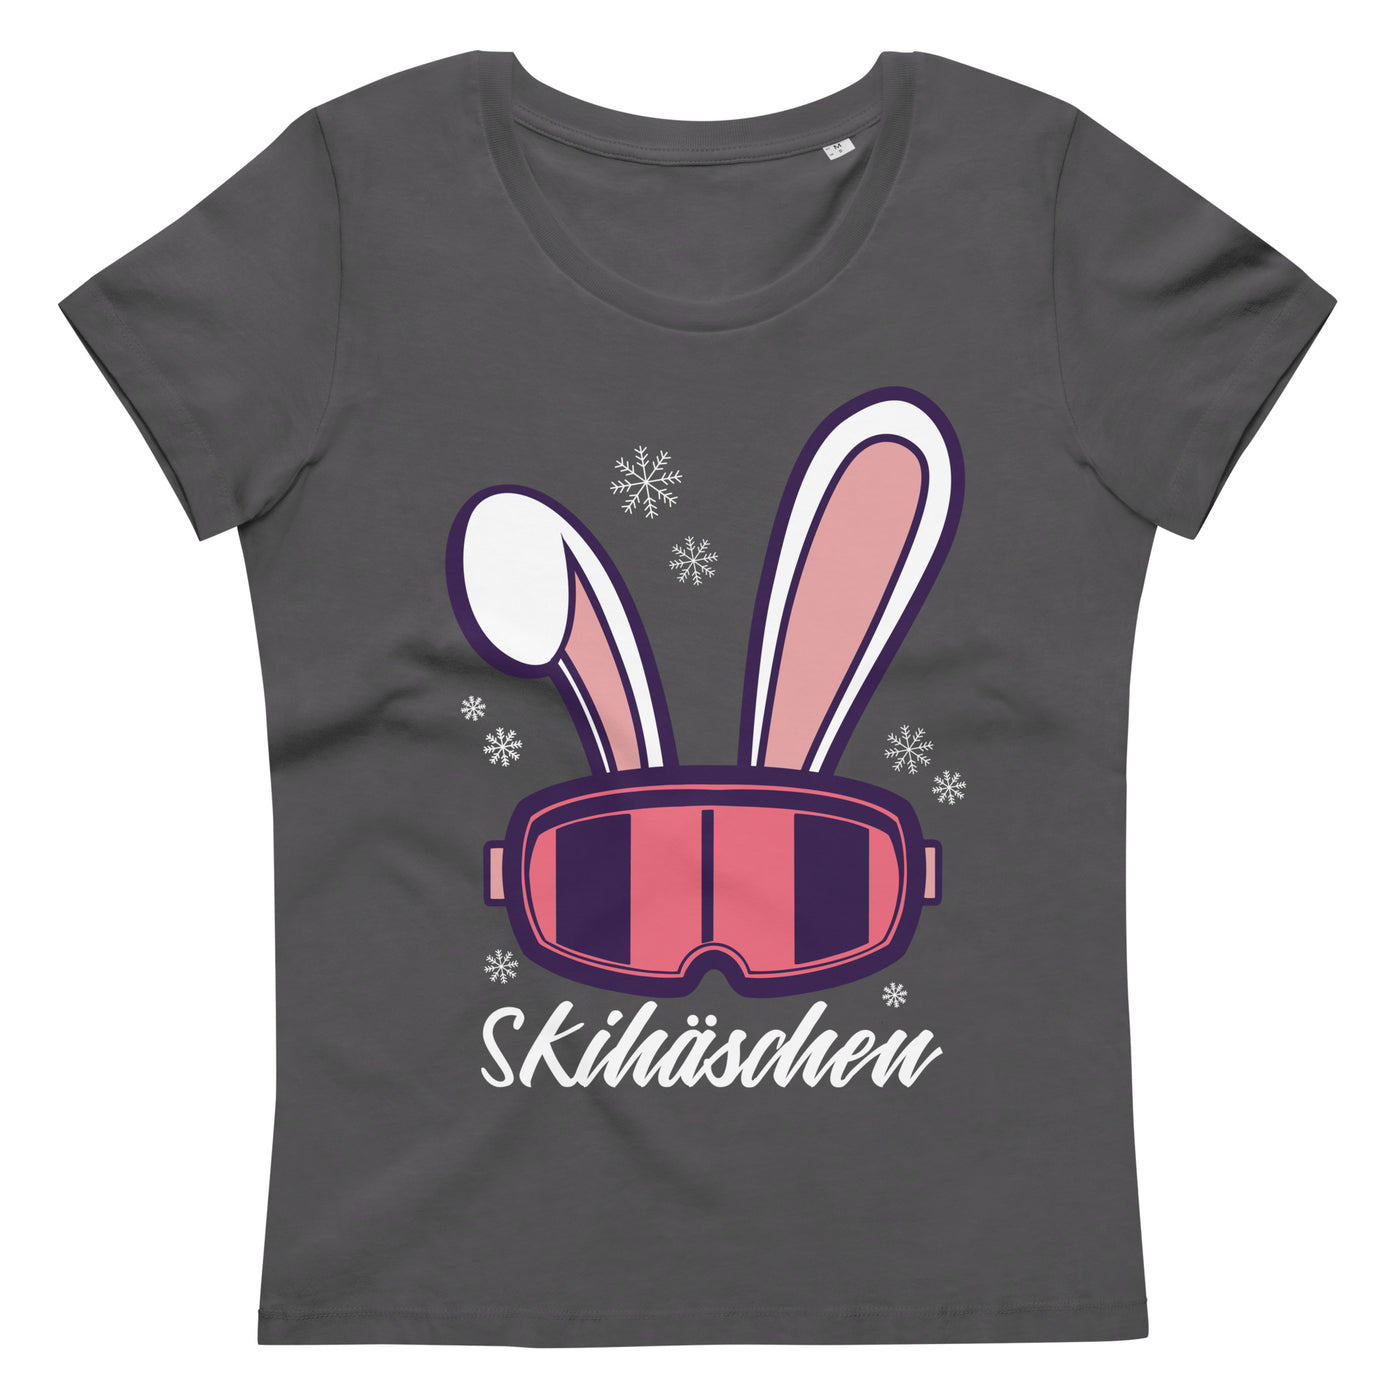 Skihäschen - (S.K) - Damen Premium Organic T-Shirt klettern Anthracite